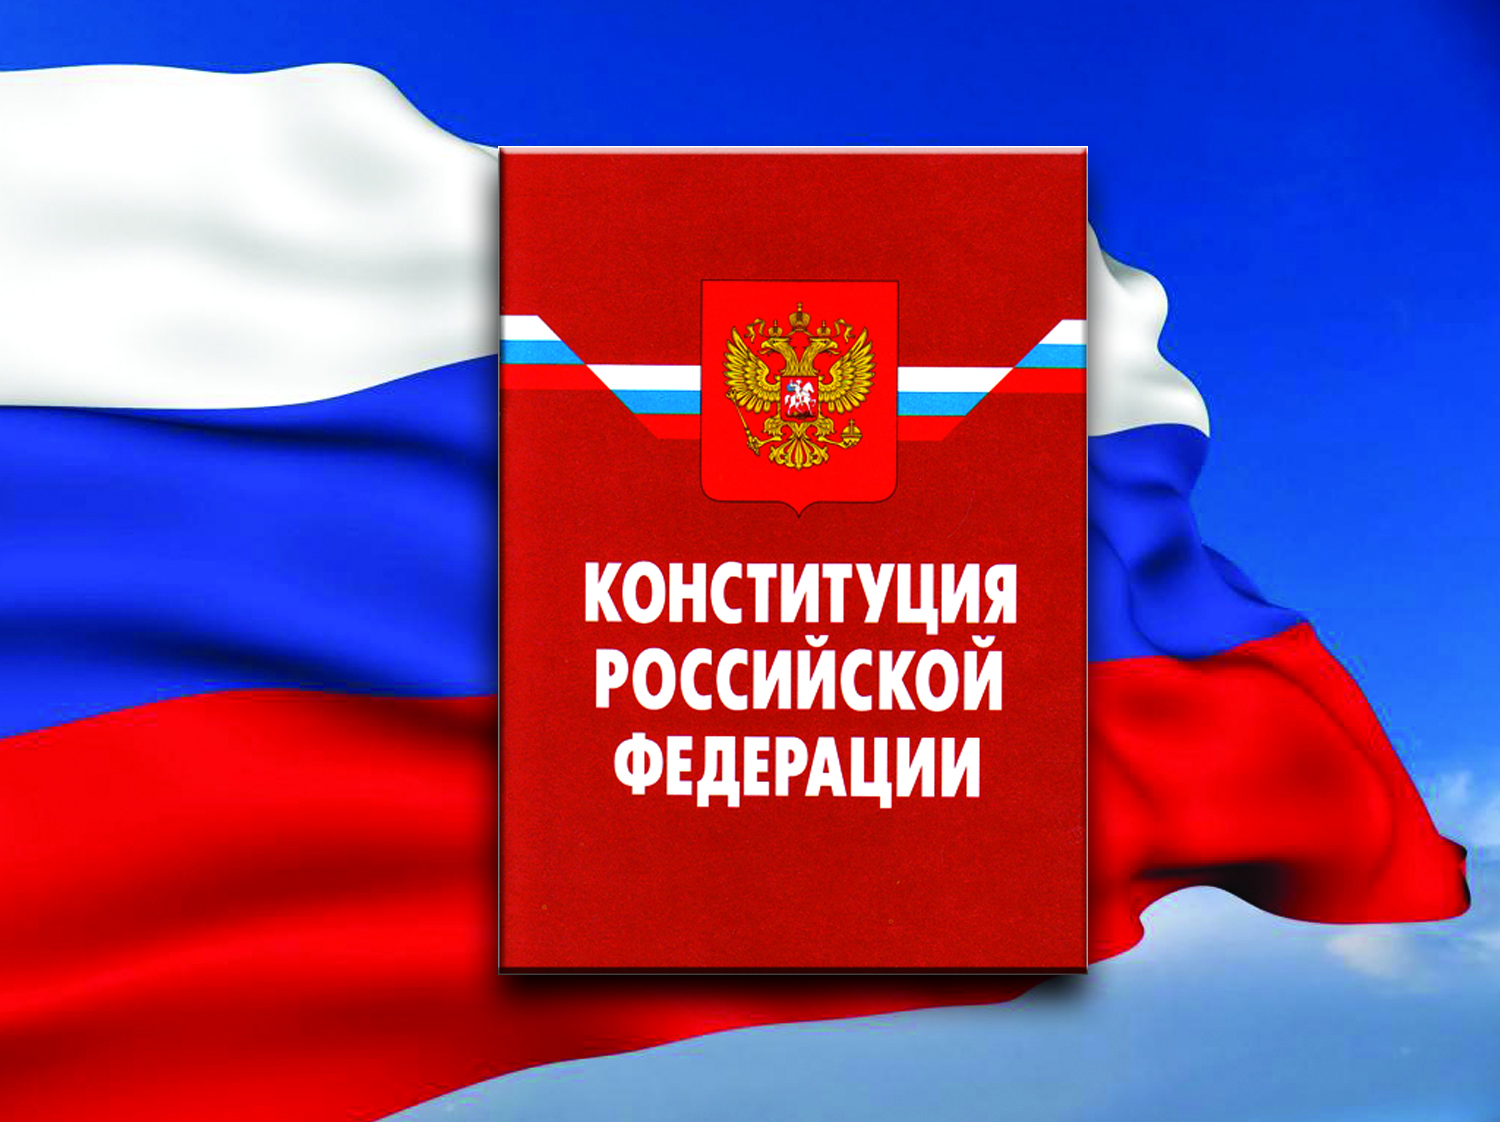 Дата голосования по Конституции РФ пока не определена